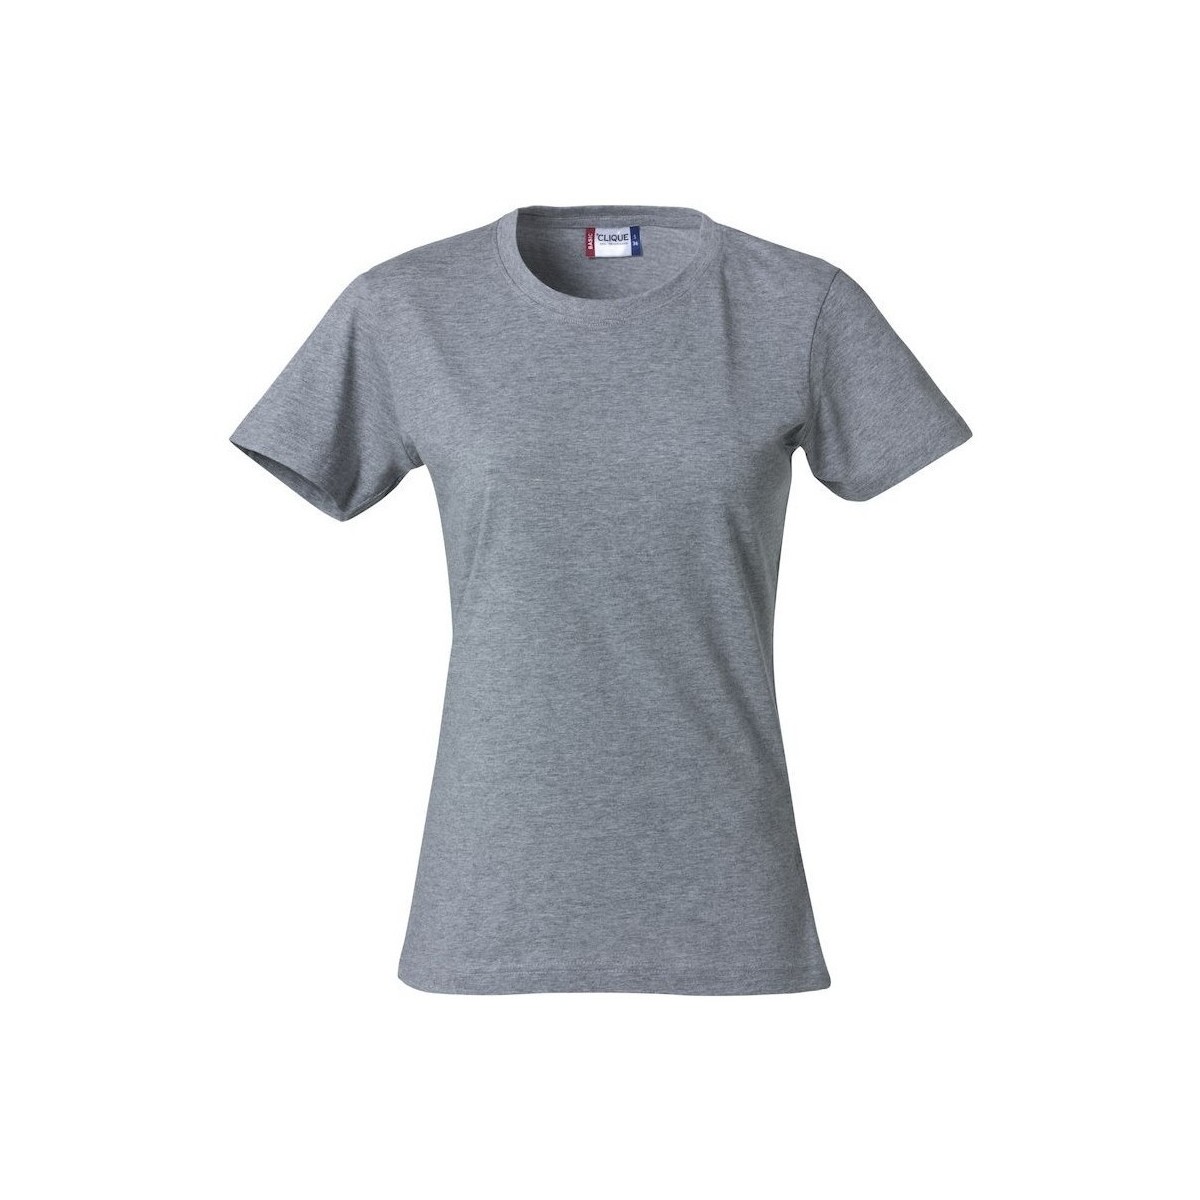 Vêtements Femme T-shirts manches longues C-Clique Basic Gris